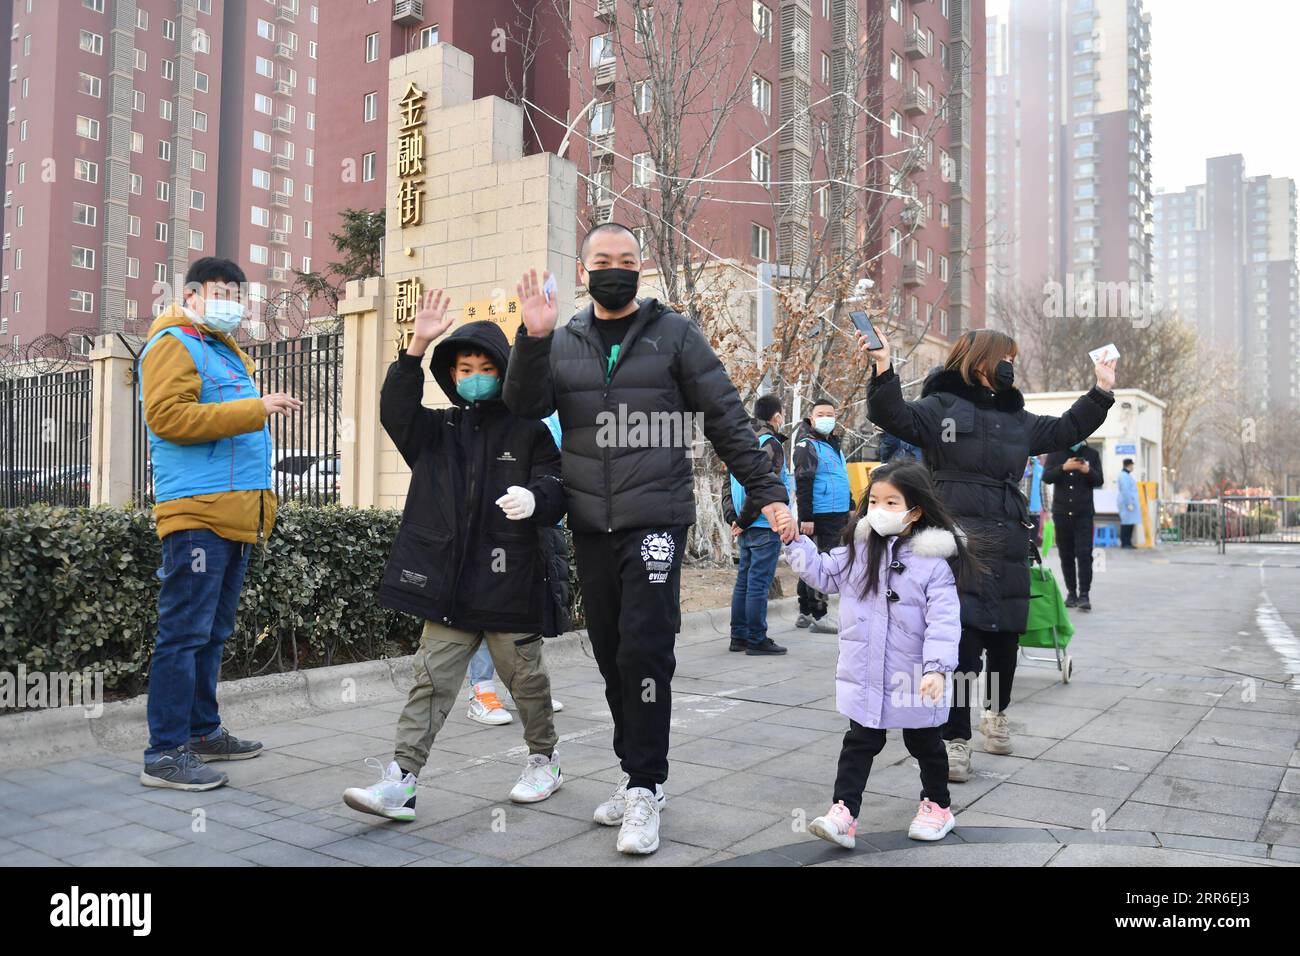 210210 -- BEIJING, le 10 février 2021 -- les résidents expriment leur gratitude en saluant les travailleurs communautaires en sortant de la communauté de Ronghui dans le district de Daxing à Beijing, capitale de la Chine, le 10 février 2021. Pékin a nettoyé toutes les zones présentant des risques moyens et élevés d’infection par le COVID-19, selon une conférence de presse tenue mardi. Mardi, la communauté résidentielle de Ronghui a été déclassée en zone à faible risque. Actuellement, toutes les zones de Pékin sont des zones à faible risque d’infection au COVID-19. CHINE-PÉKIN-DAXING-COVID-19-NIVEAU DE RISQUE-DÉCLASSEMENT DU CN SUNXRUIBO PUBLICATIONXNOTXINXCHN Banque D'Images